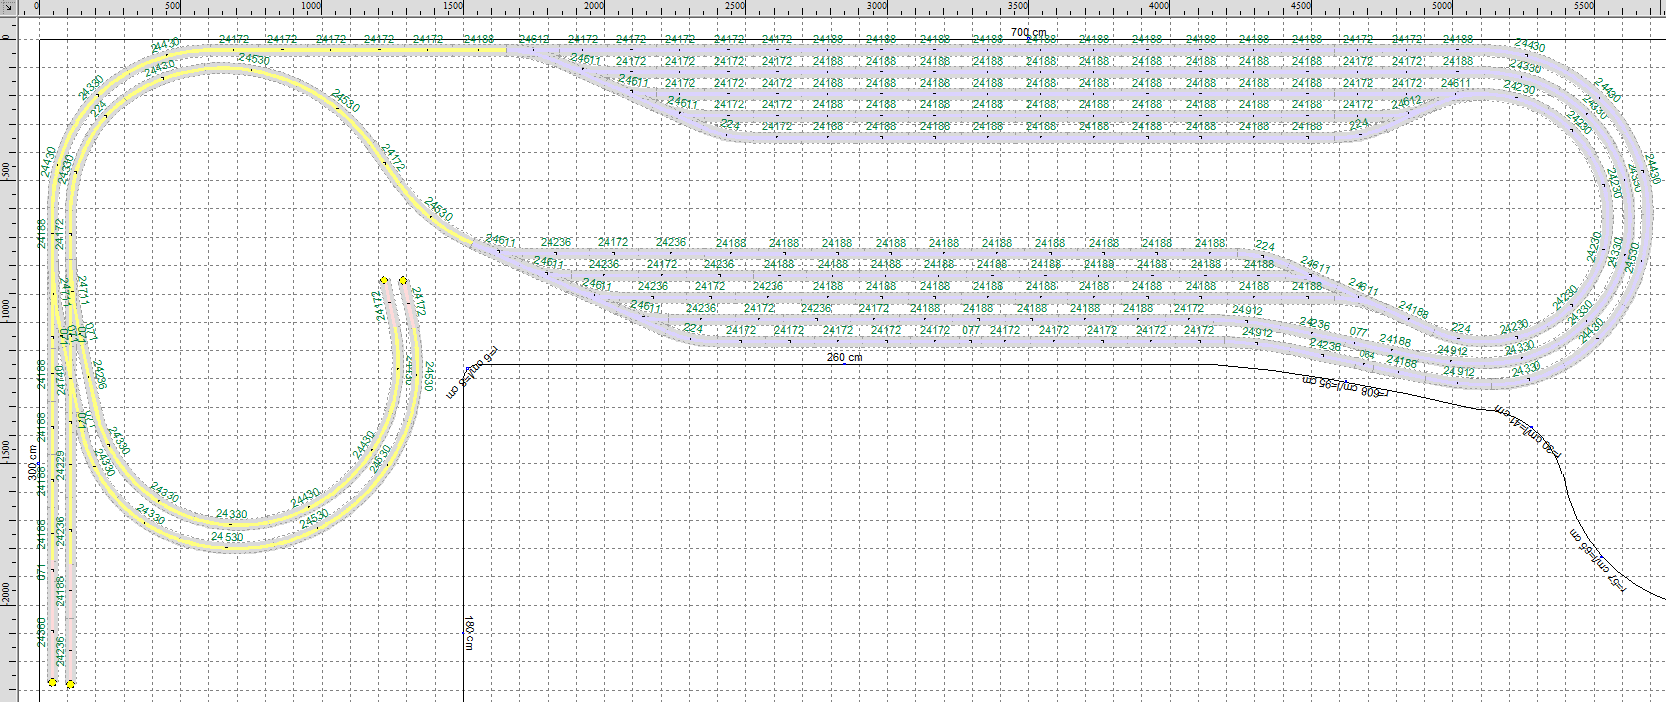 Baanplan U-vorm 700 x 300 (v5.3) - de laagste sporen aan de linkerkant, plus schaduwstation.png